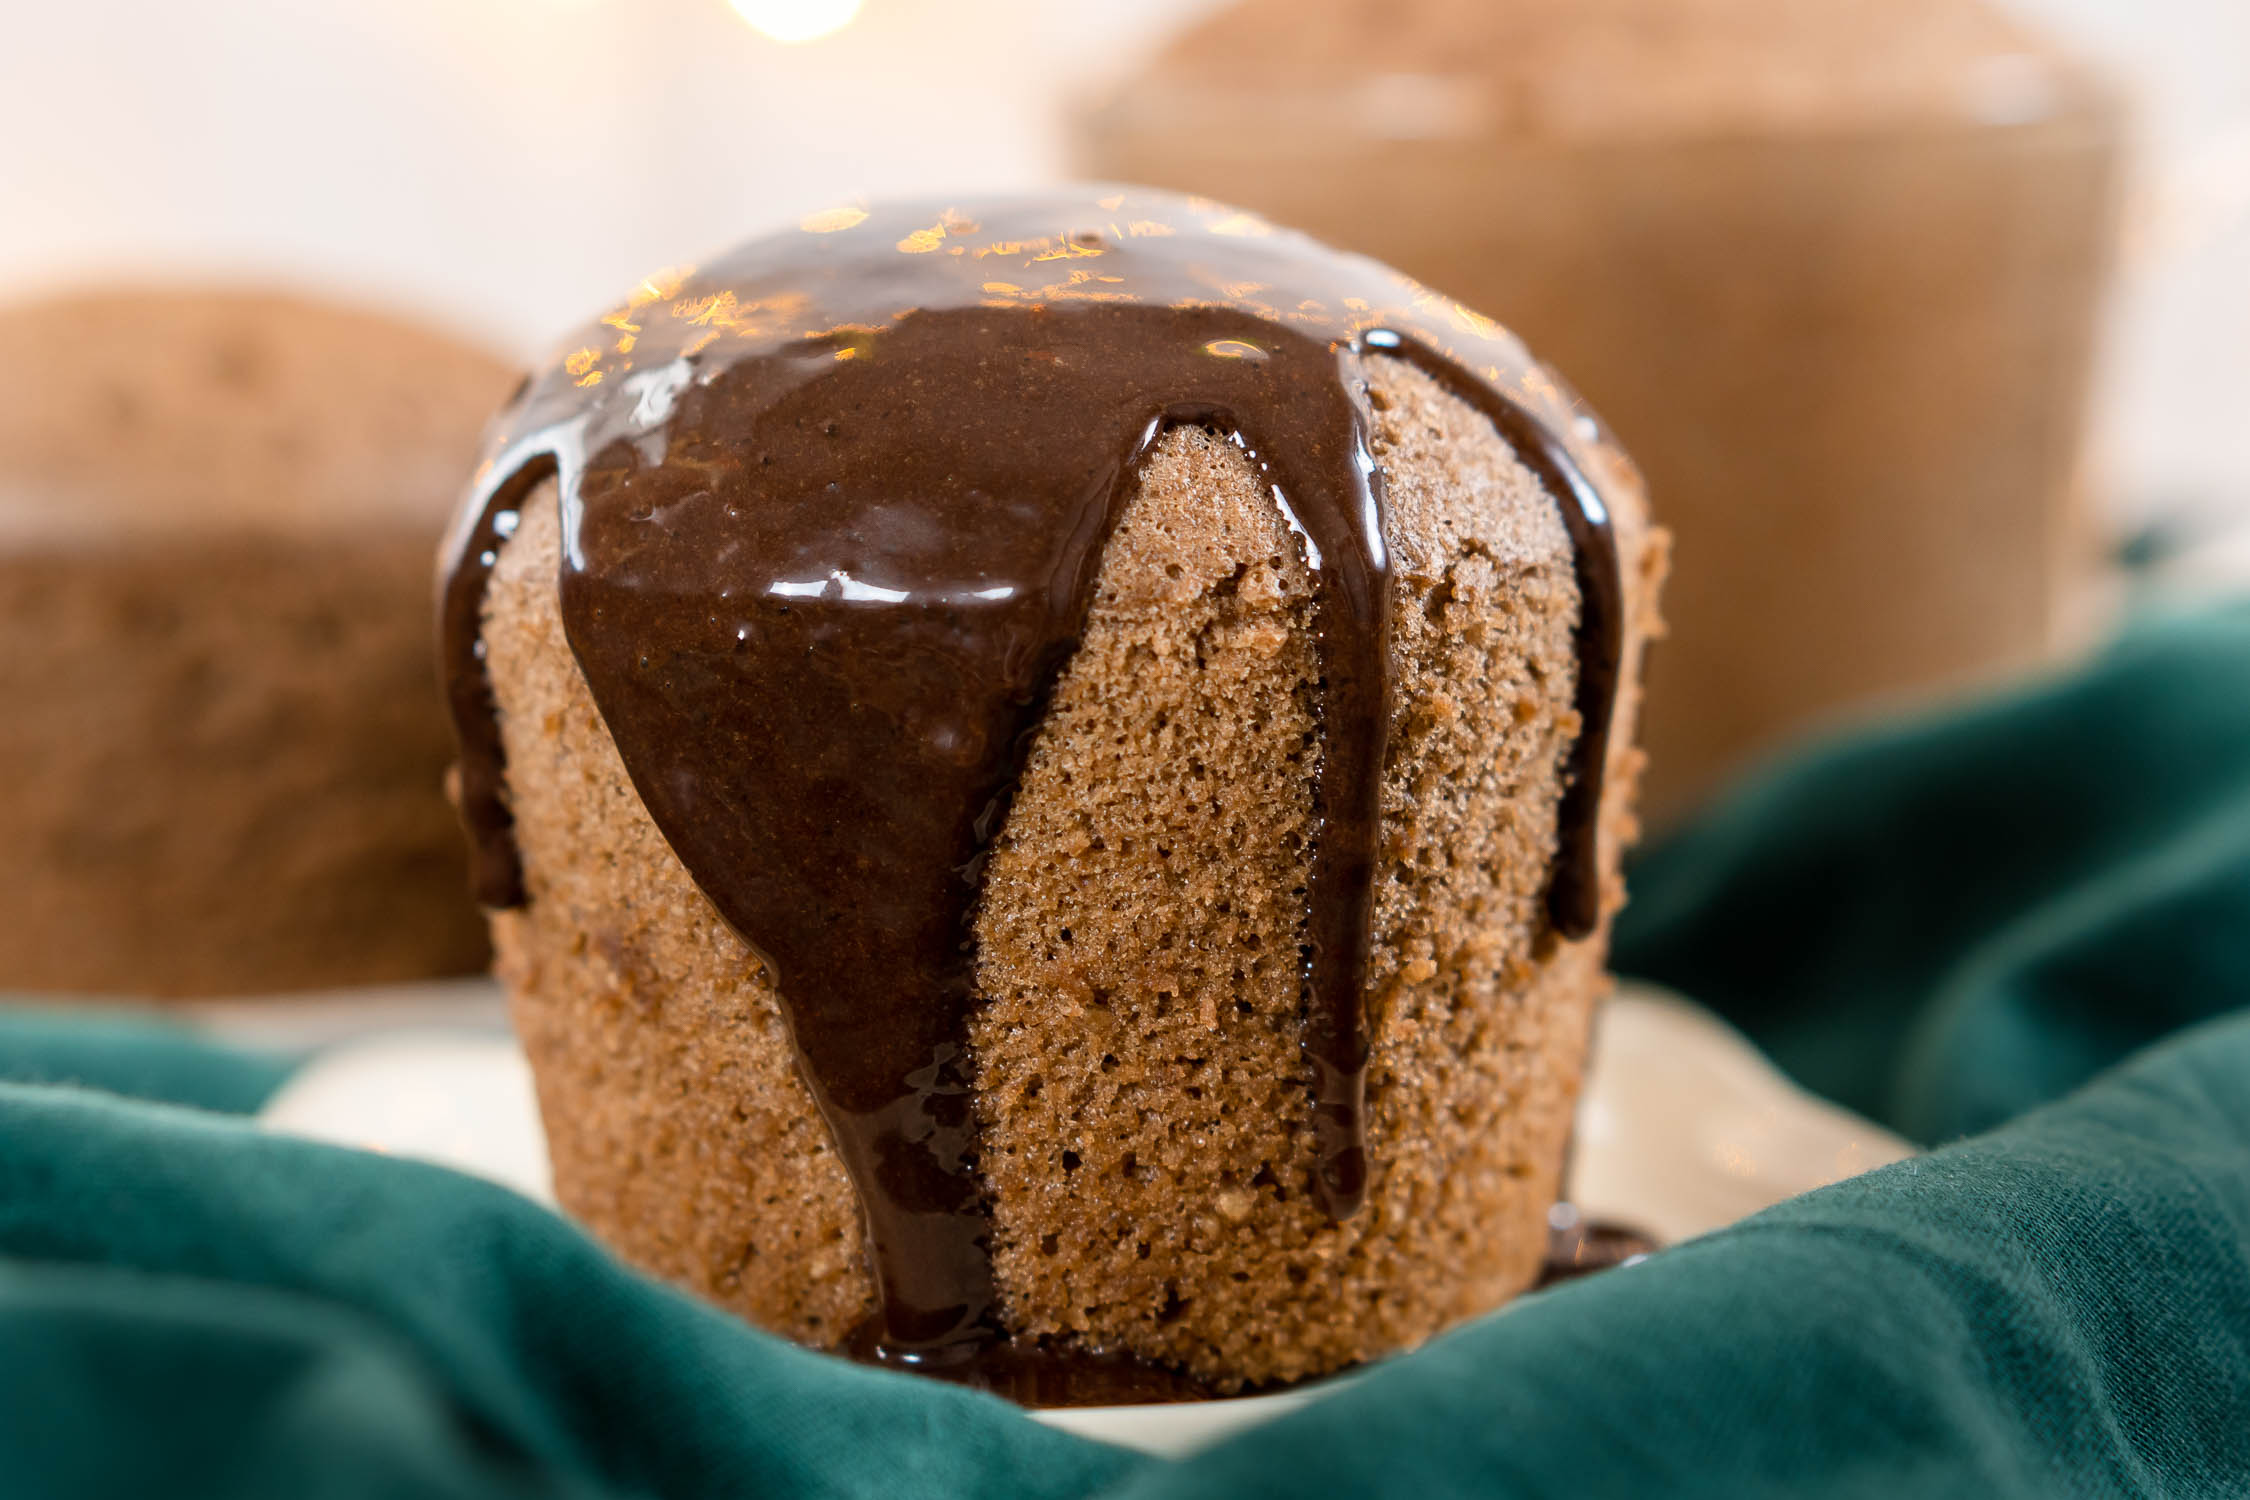 COCOA AND STRAWBERRY GLUTEN-FREE CAKE RECIPE